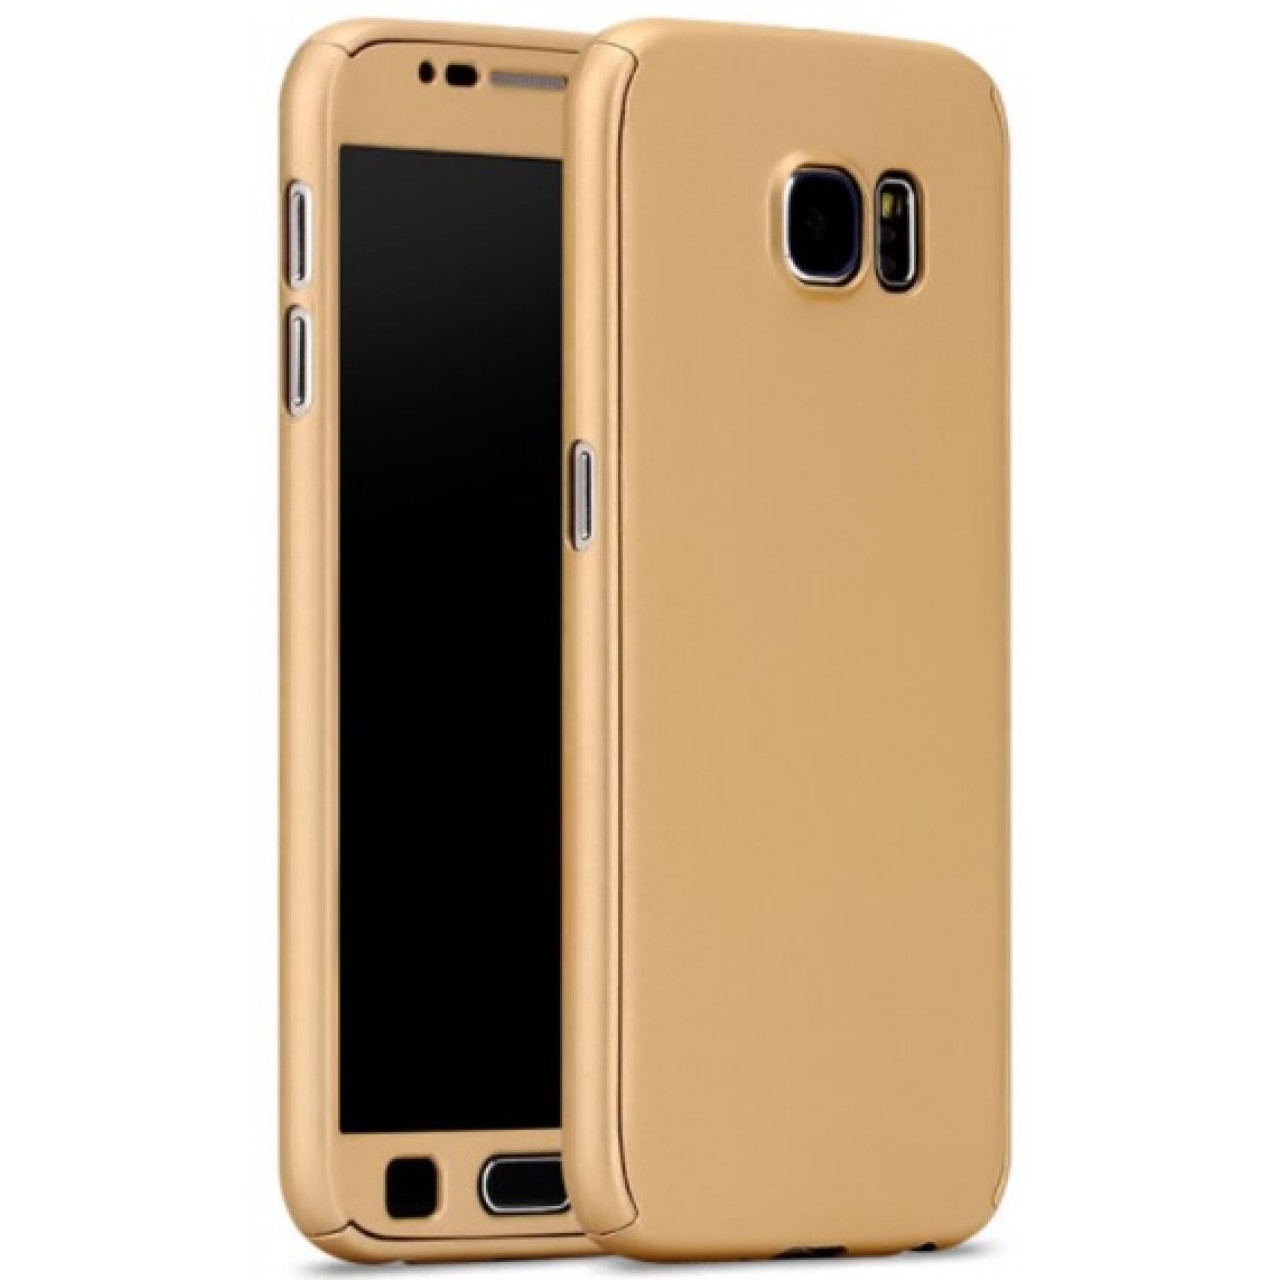 Θήκη Samsung Galaxy S7 Hybrid 360 Full body + Tempered Glass Προστασία Οθόνης - 3114 - Χρυσό - OEM